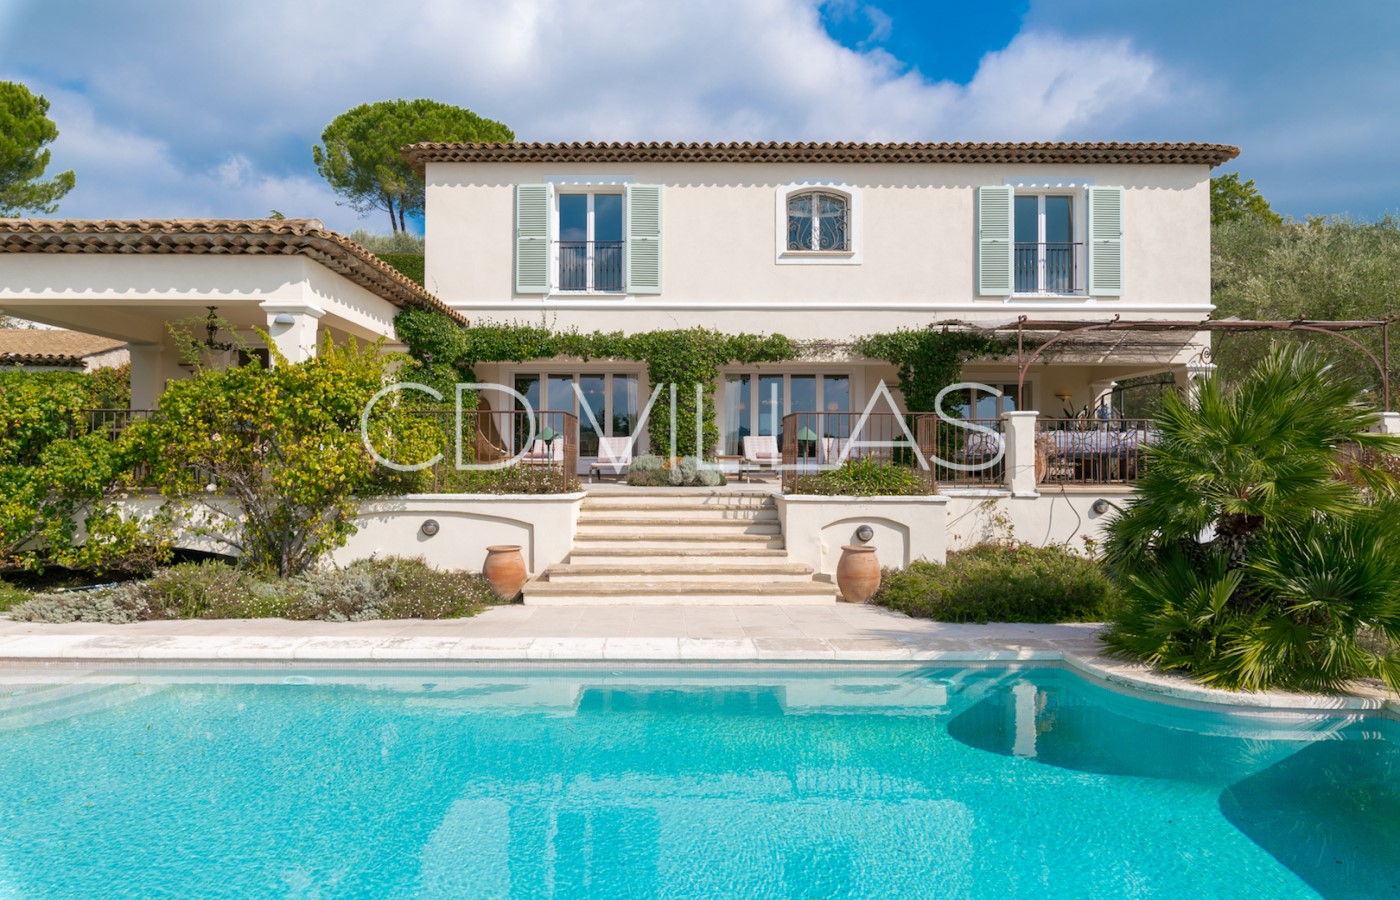 Villa Celeste | Cote d'Azur Villas